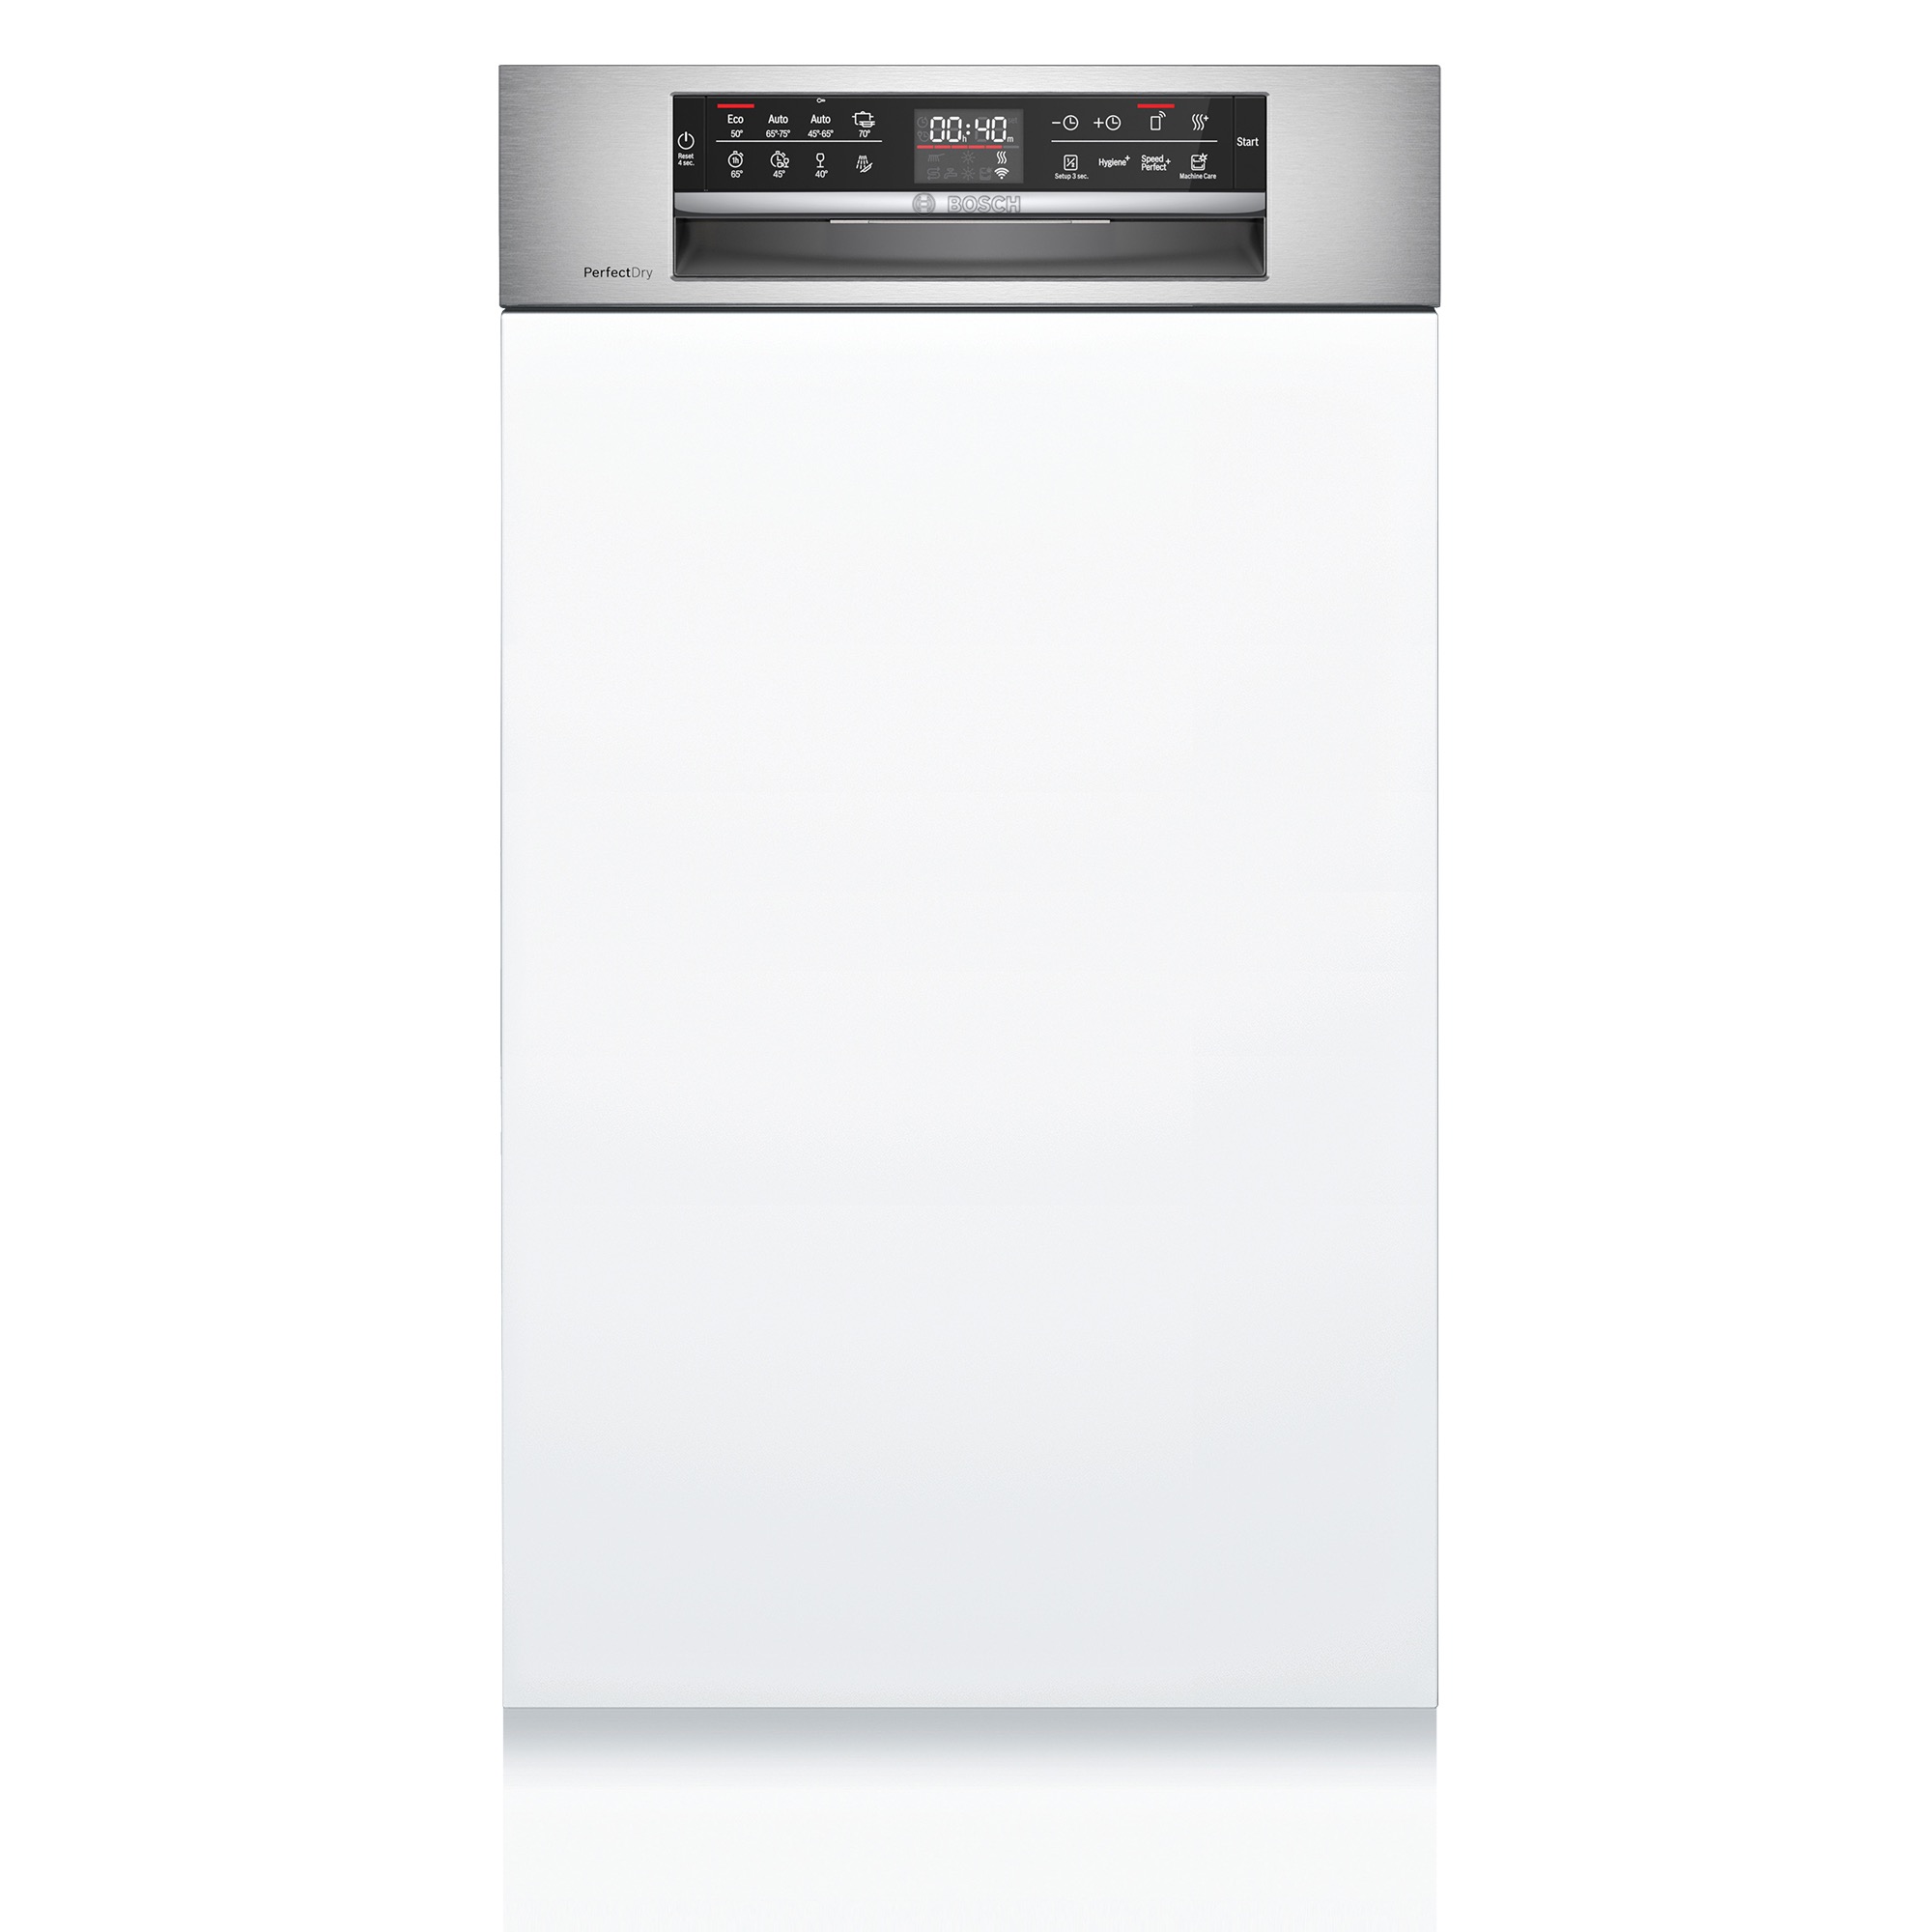 ビルトイン食洗機 フロントオープン W450 前面操作タイプ ゼオライトドライ（本体のみ） KB-PT004-08-G234 正面に操作パネルがあります。白い面材と巾木は付属しません